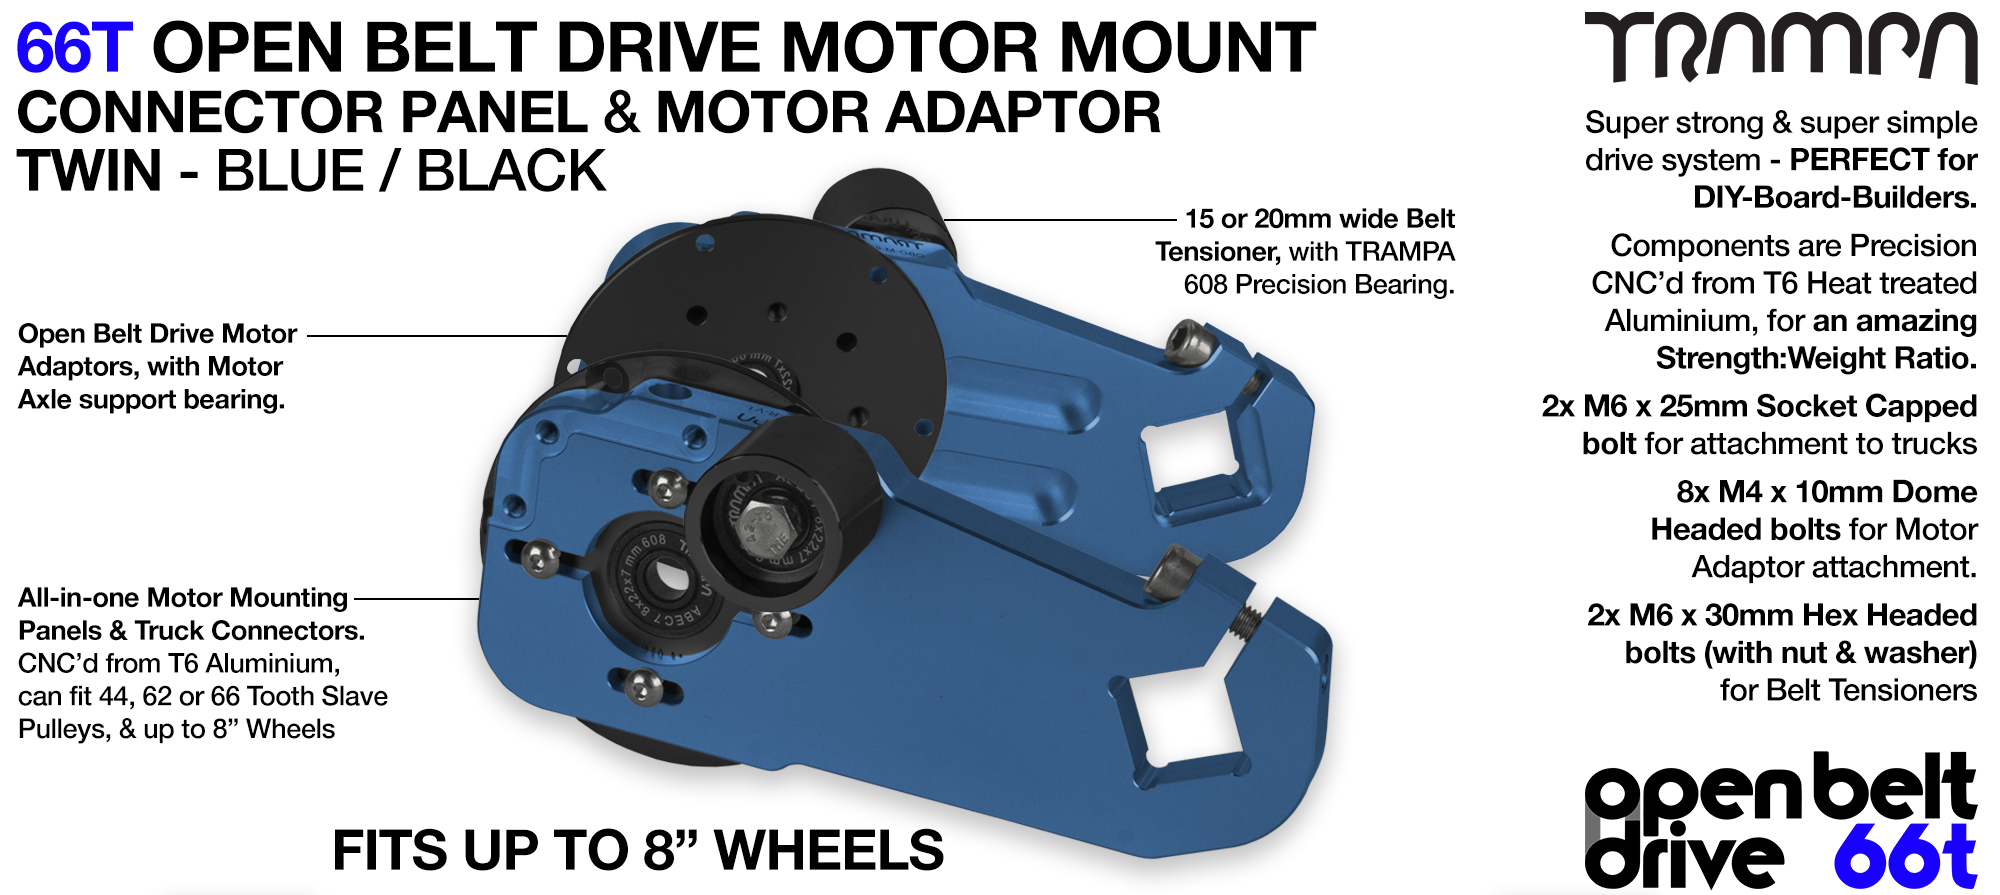 66T OPEN BELT DRIVE Motor Mount & Motor Adaptor - TWIN BLUE